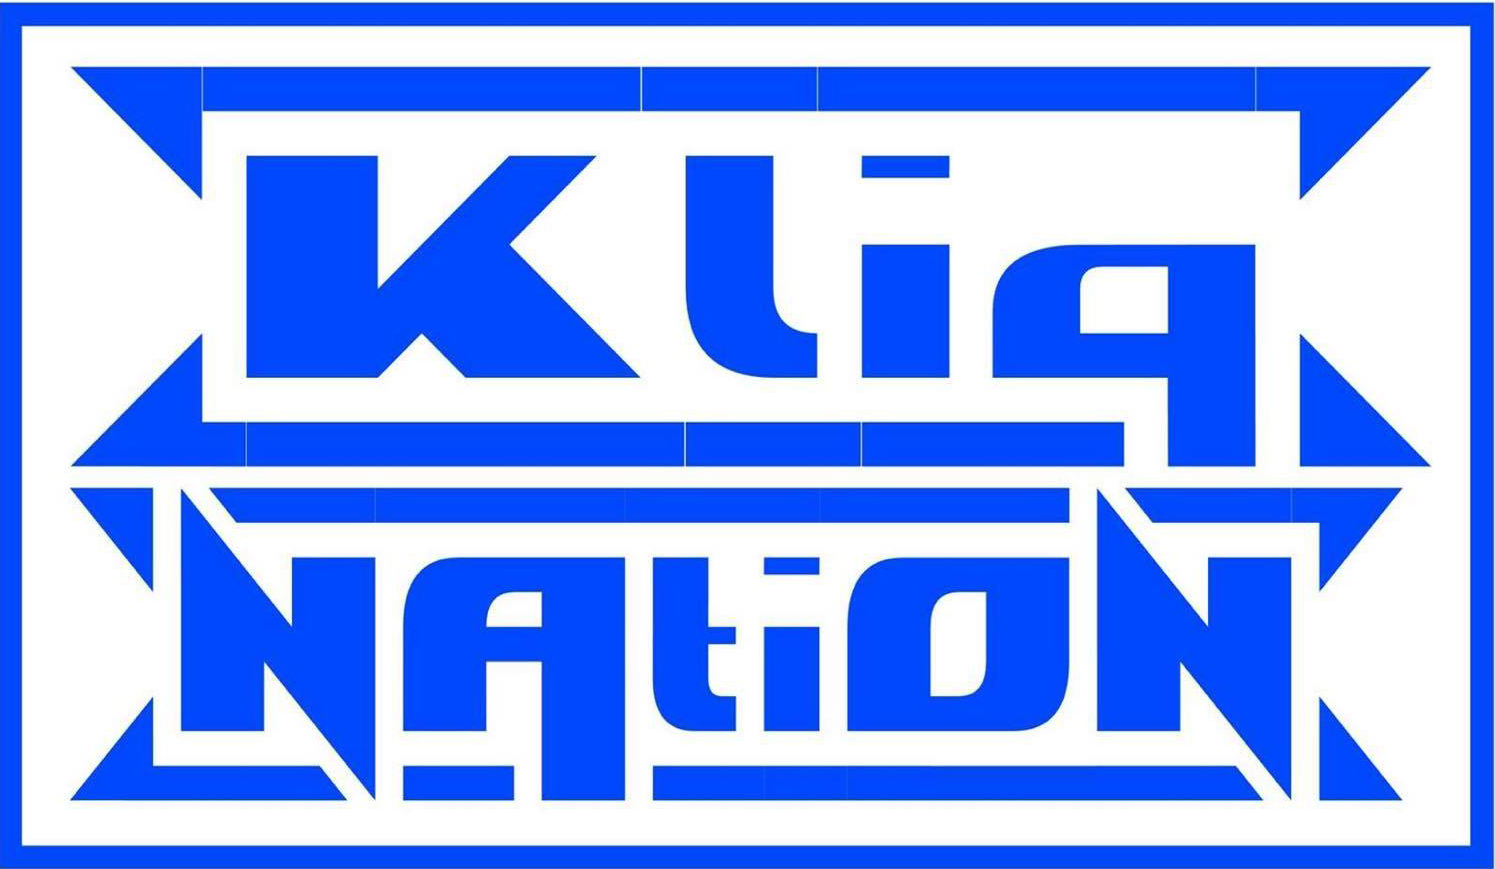 The KLIQ Nation